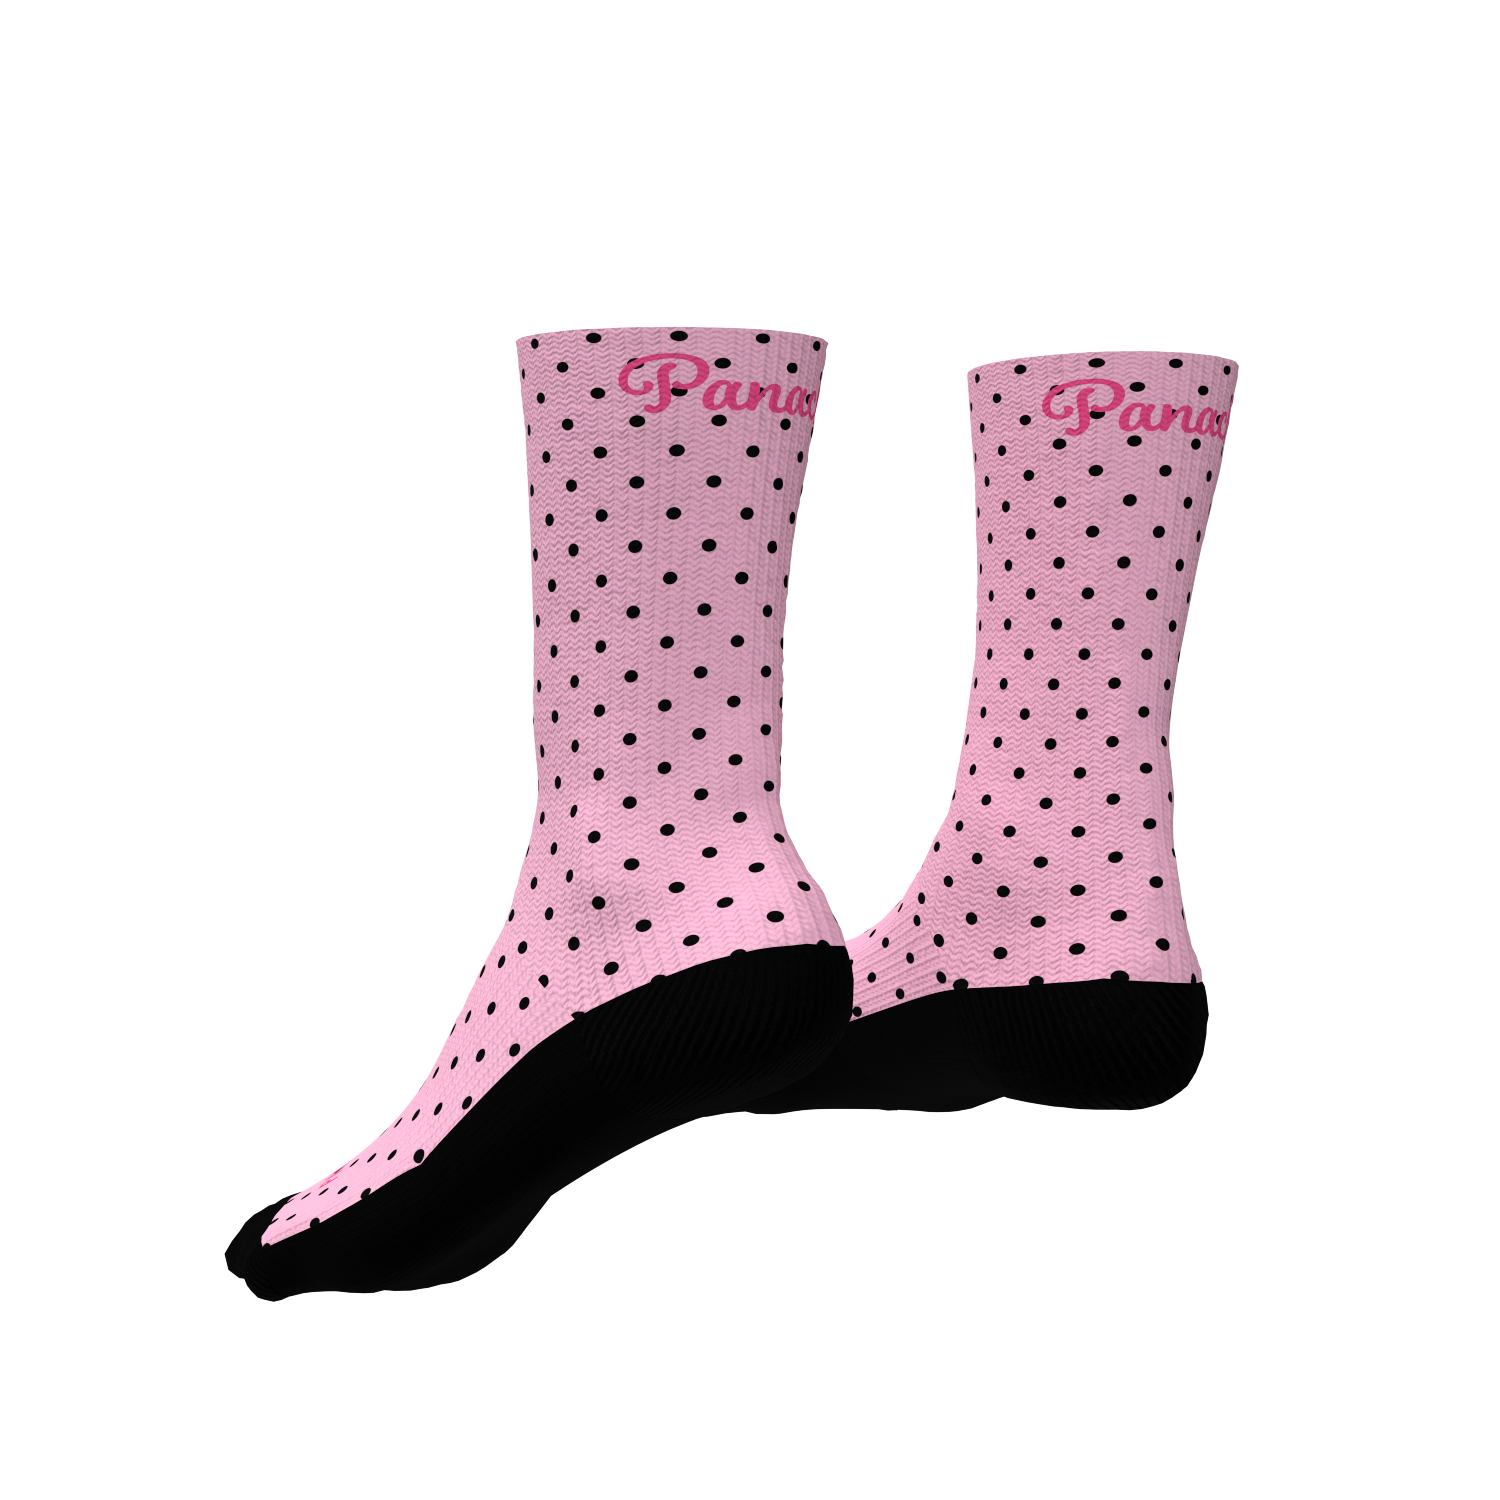 Pro 6" Sock - Vintage Pink